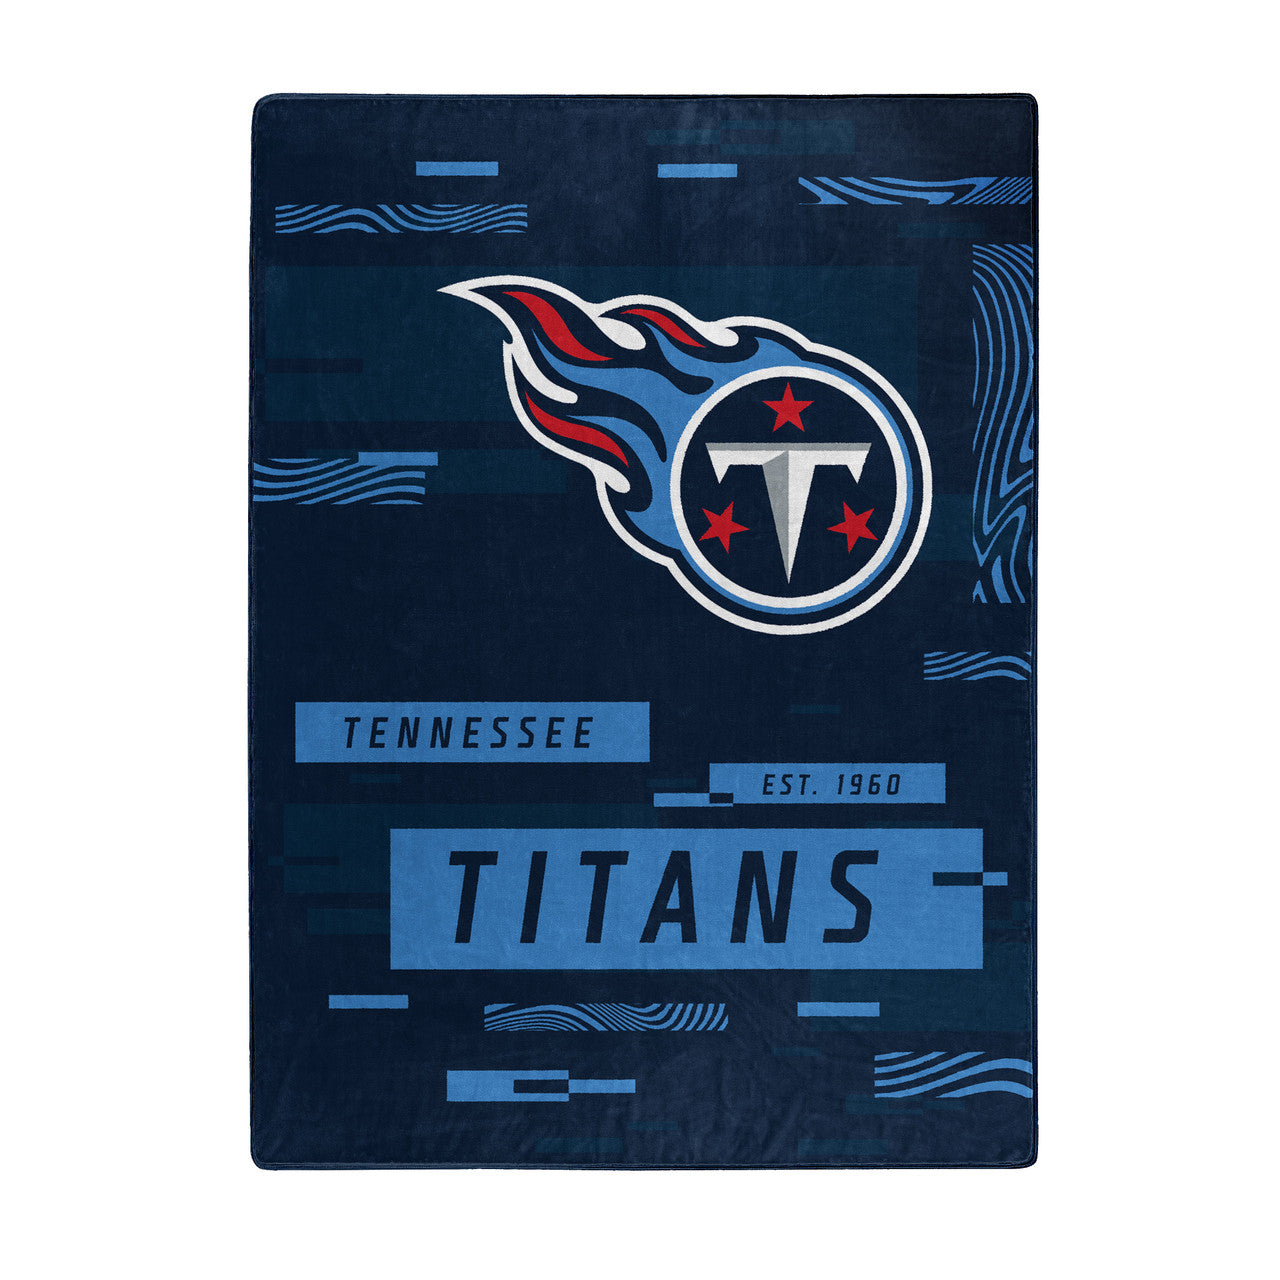 Tennessee Titans 60" x 80" Raschel Digitize Design Blanket by Northwest